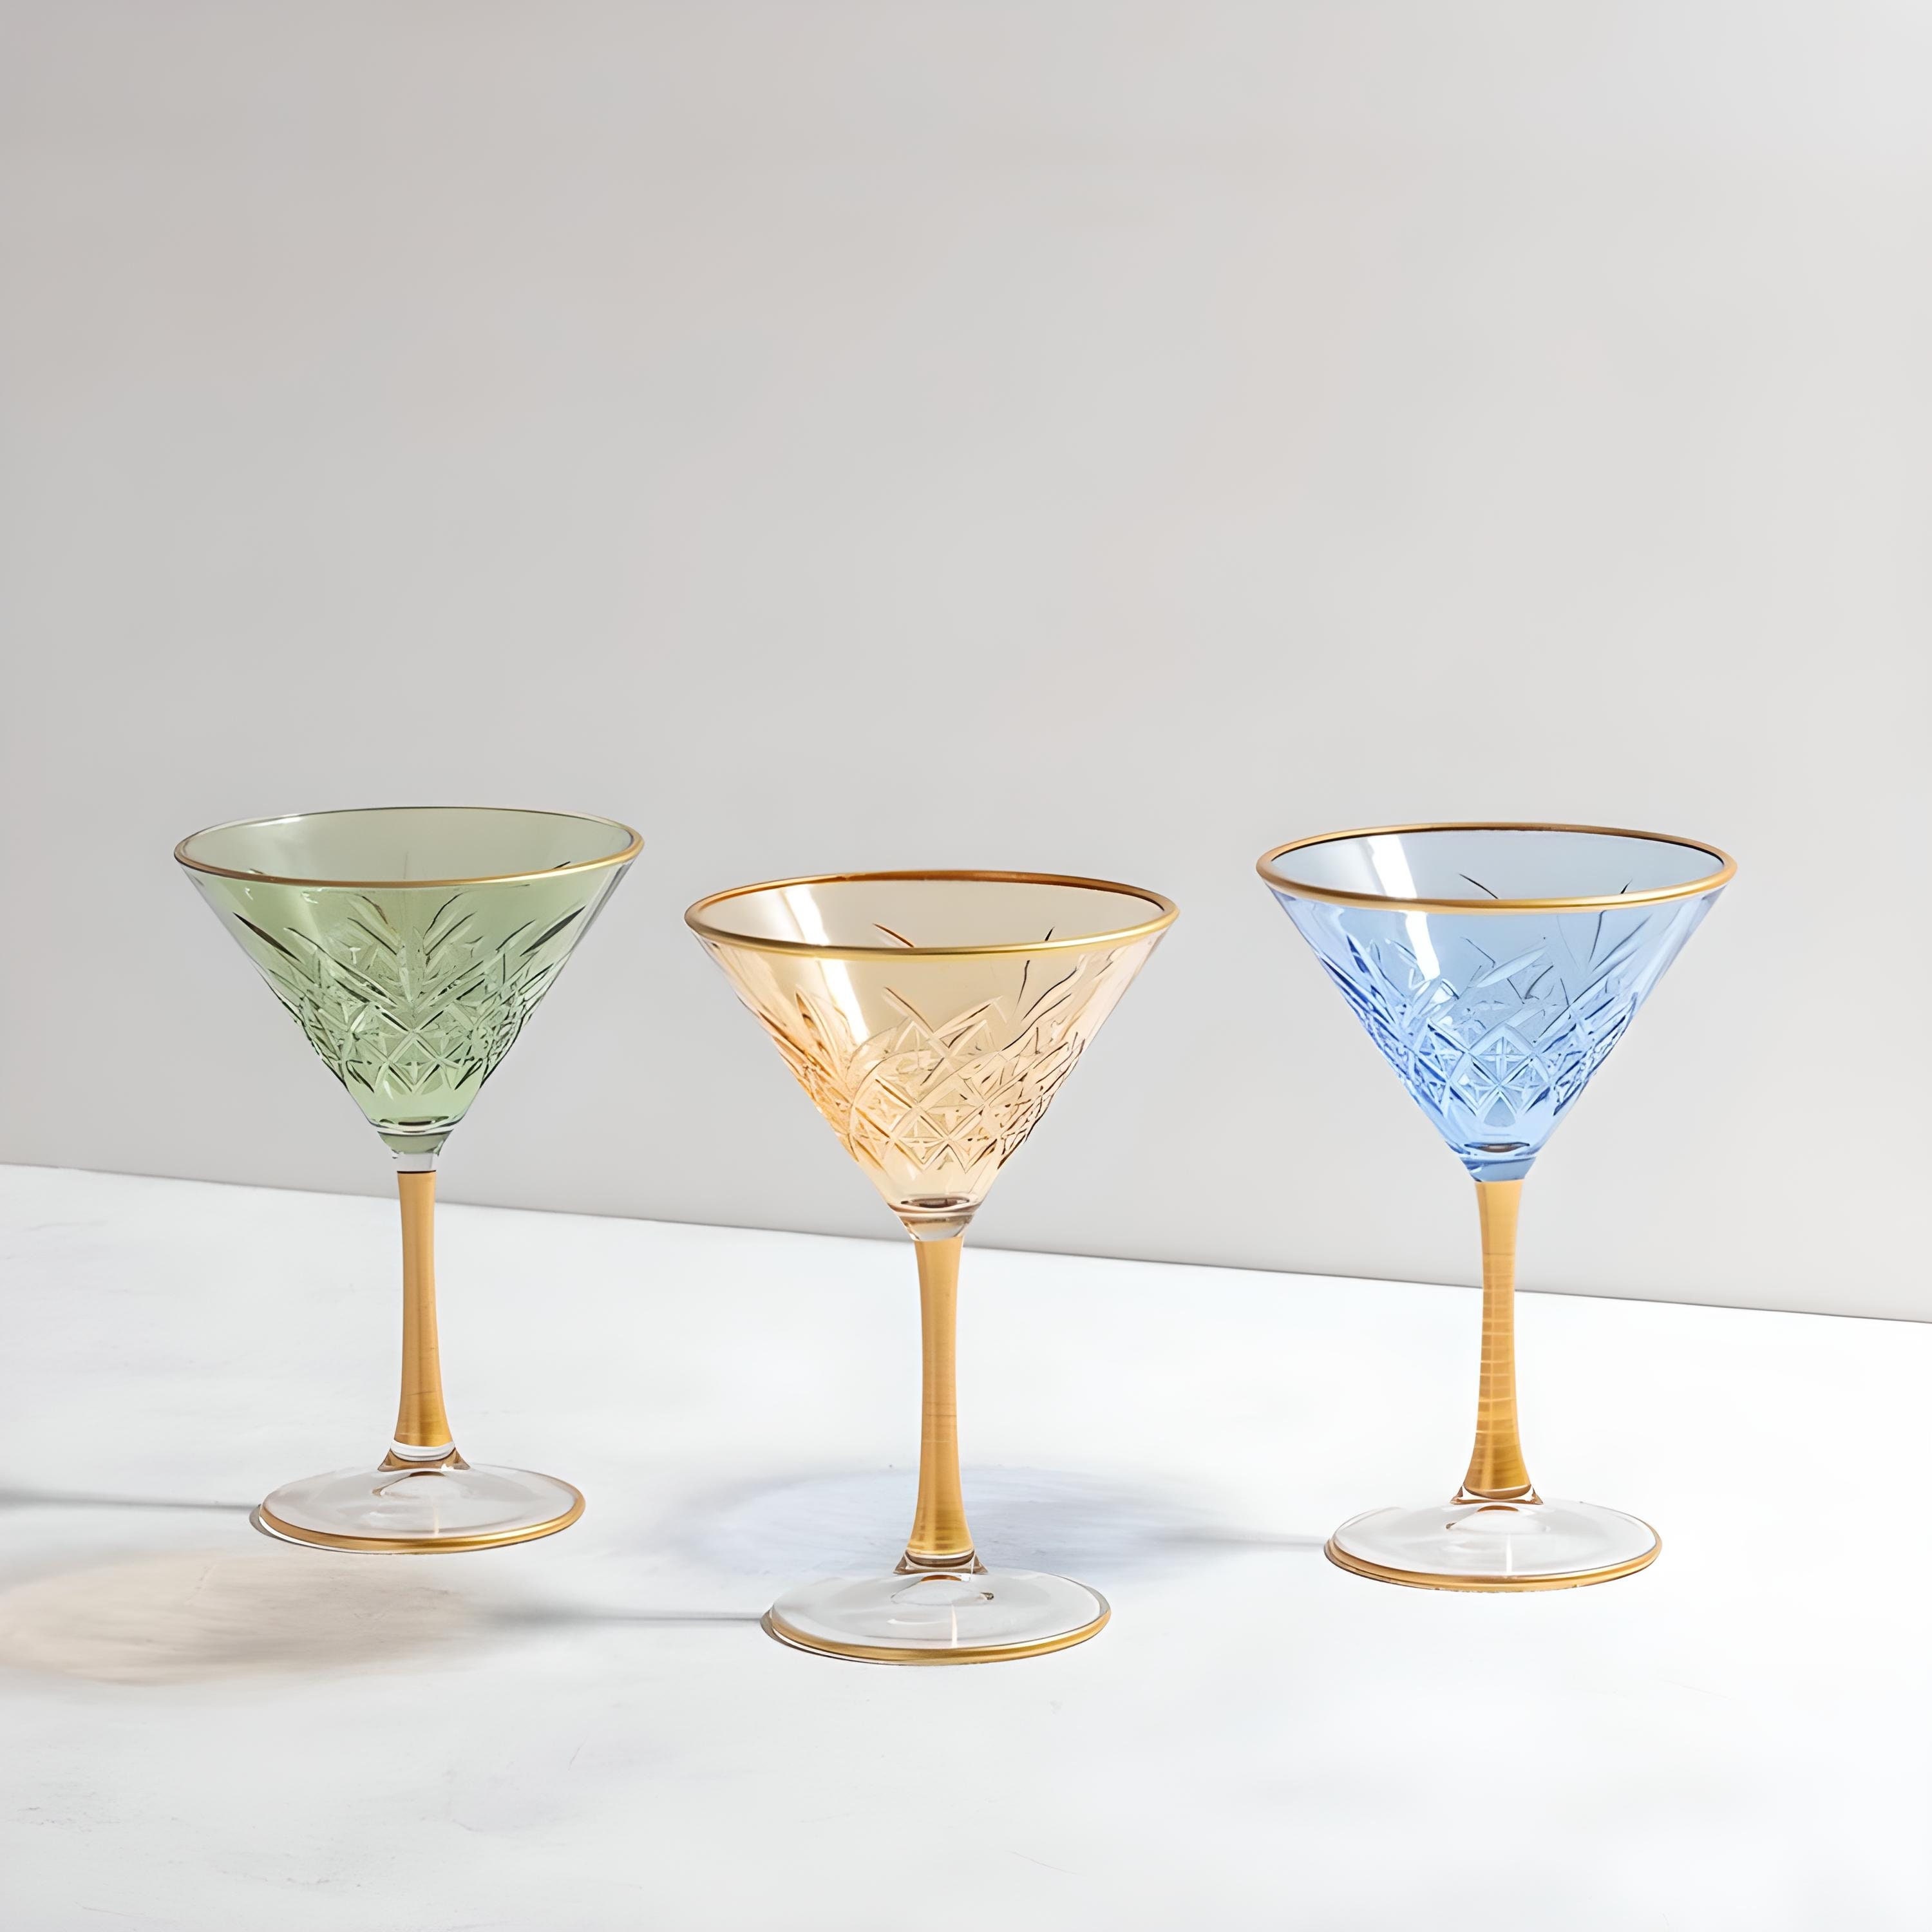 Lorren Home Trends Tall 12 Ounce Drinking Glass-Textured Cut